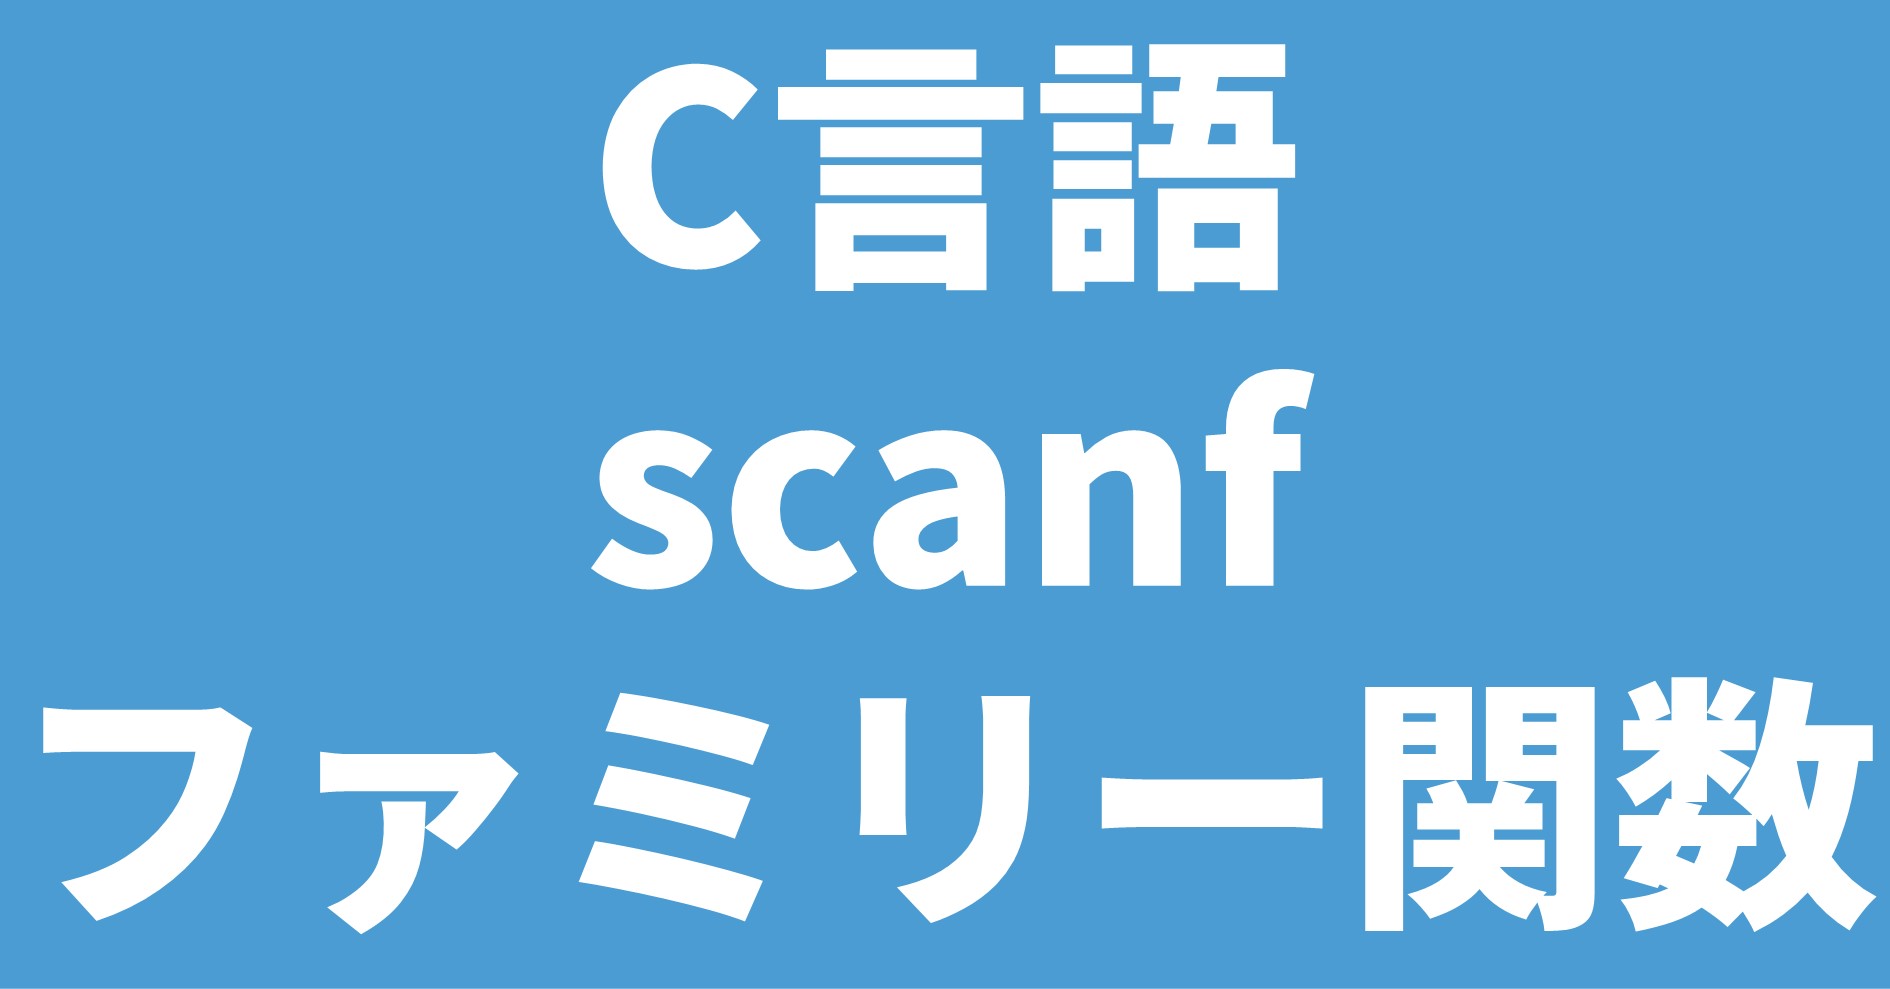 C言語 scanfファミリー関数